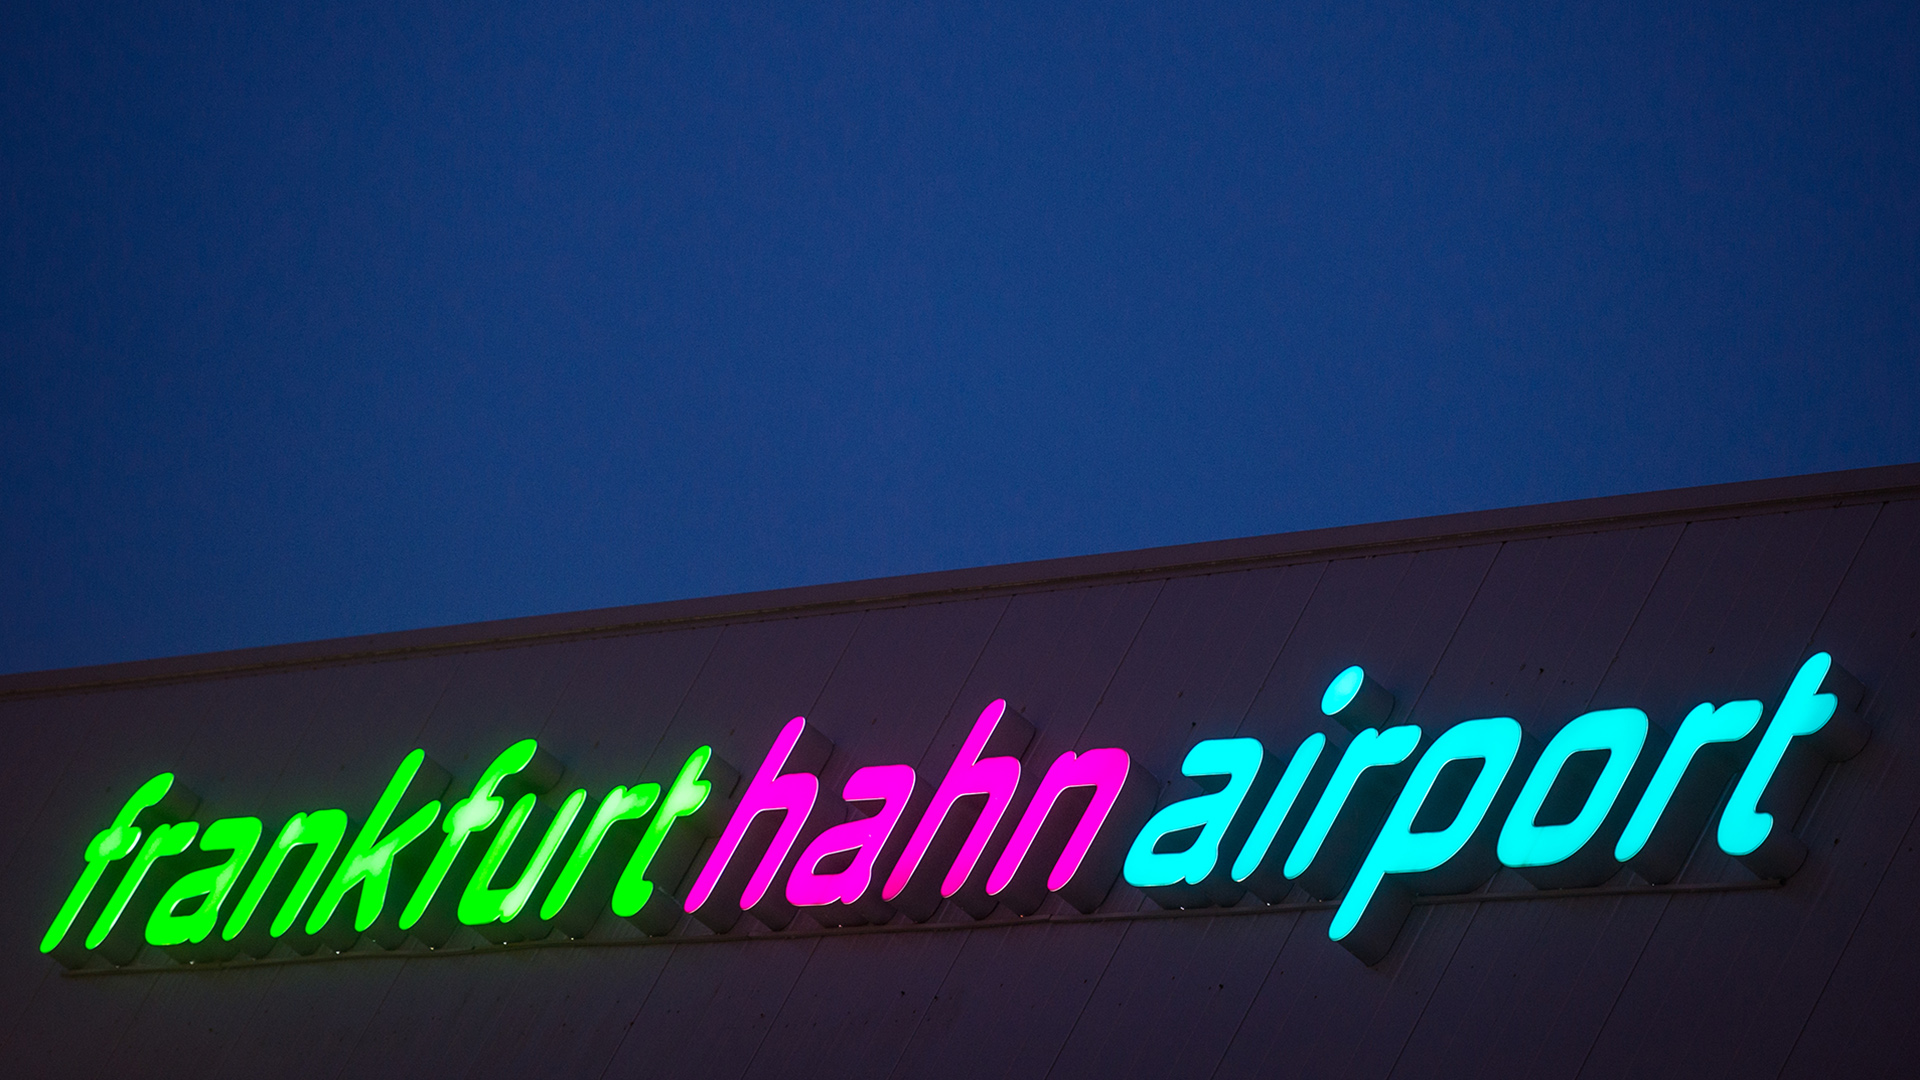 Kauft ein russischer Oligarch den Flughafen Frankfurt-Hahn?